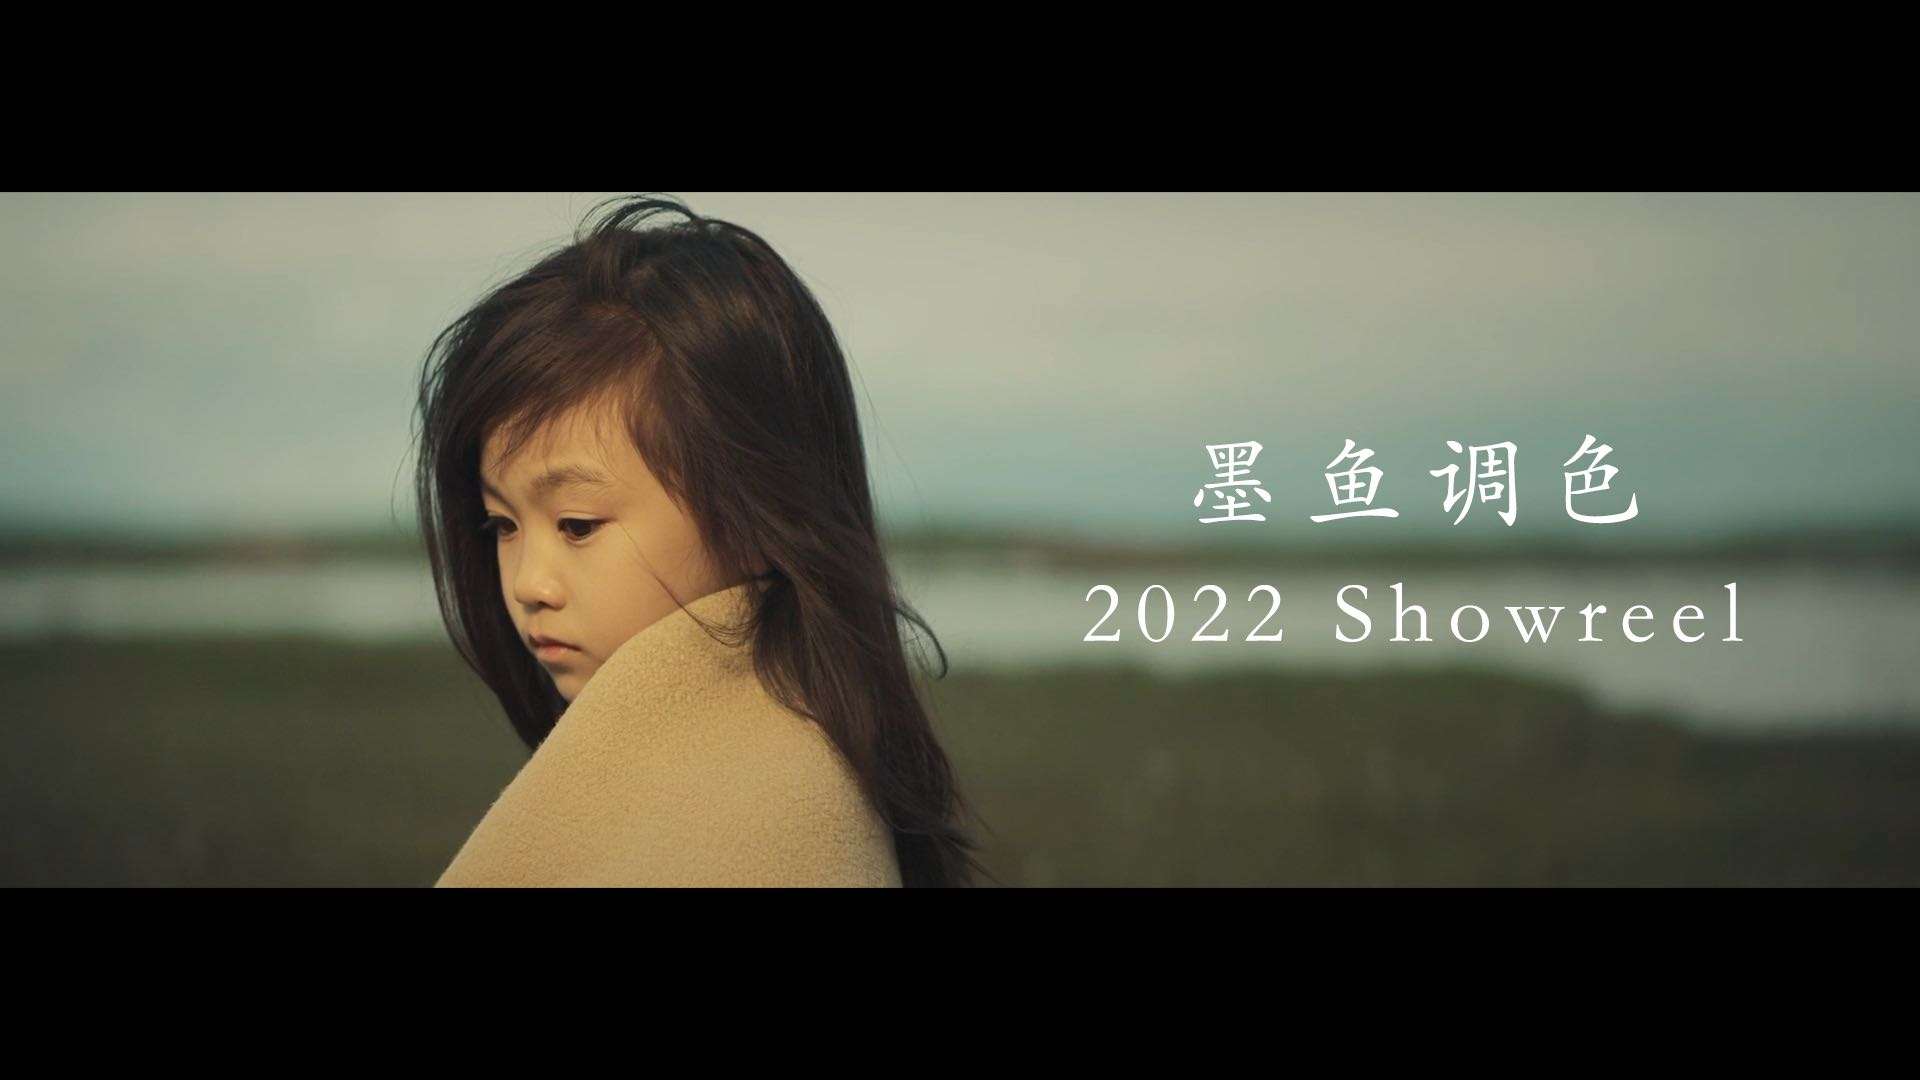 墨鱼调色 2022 Showreel